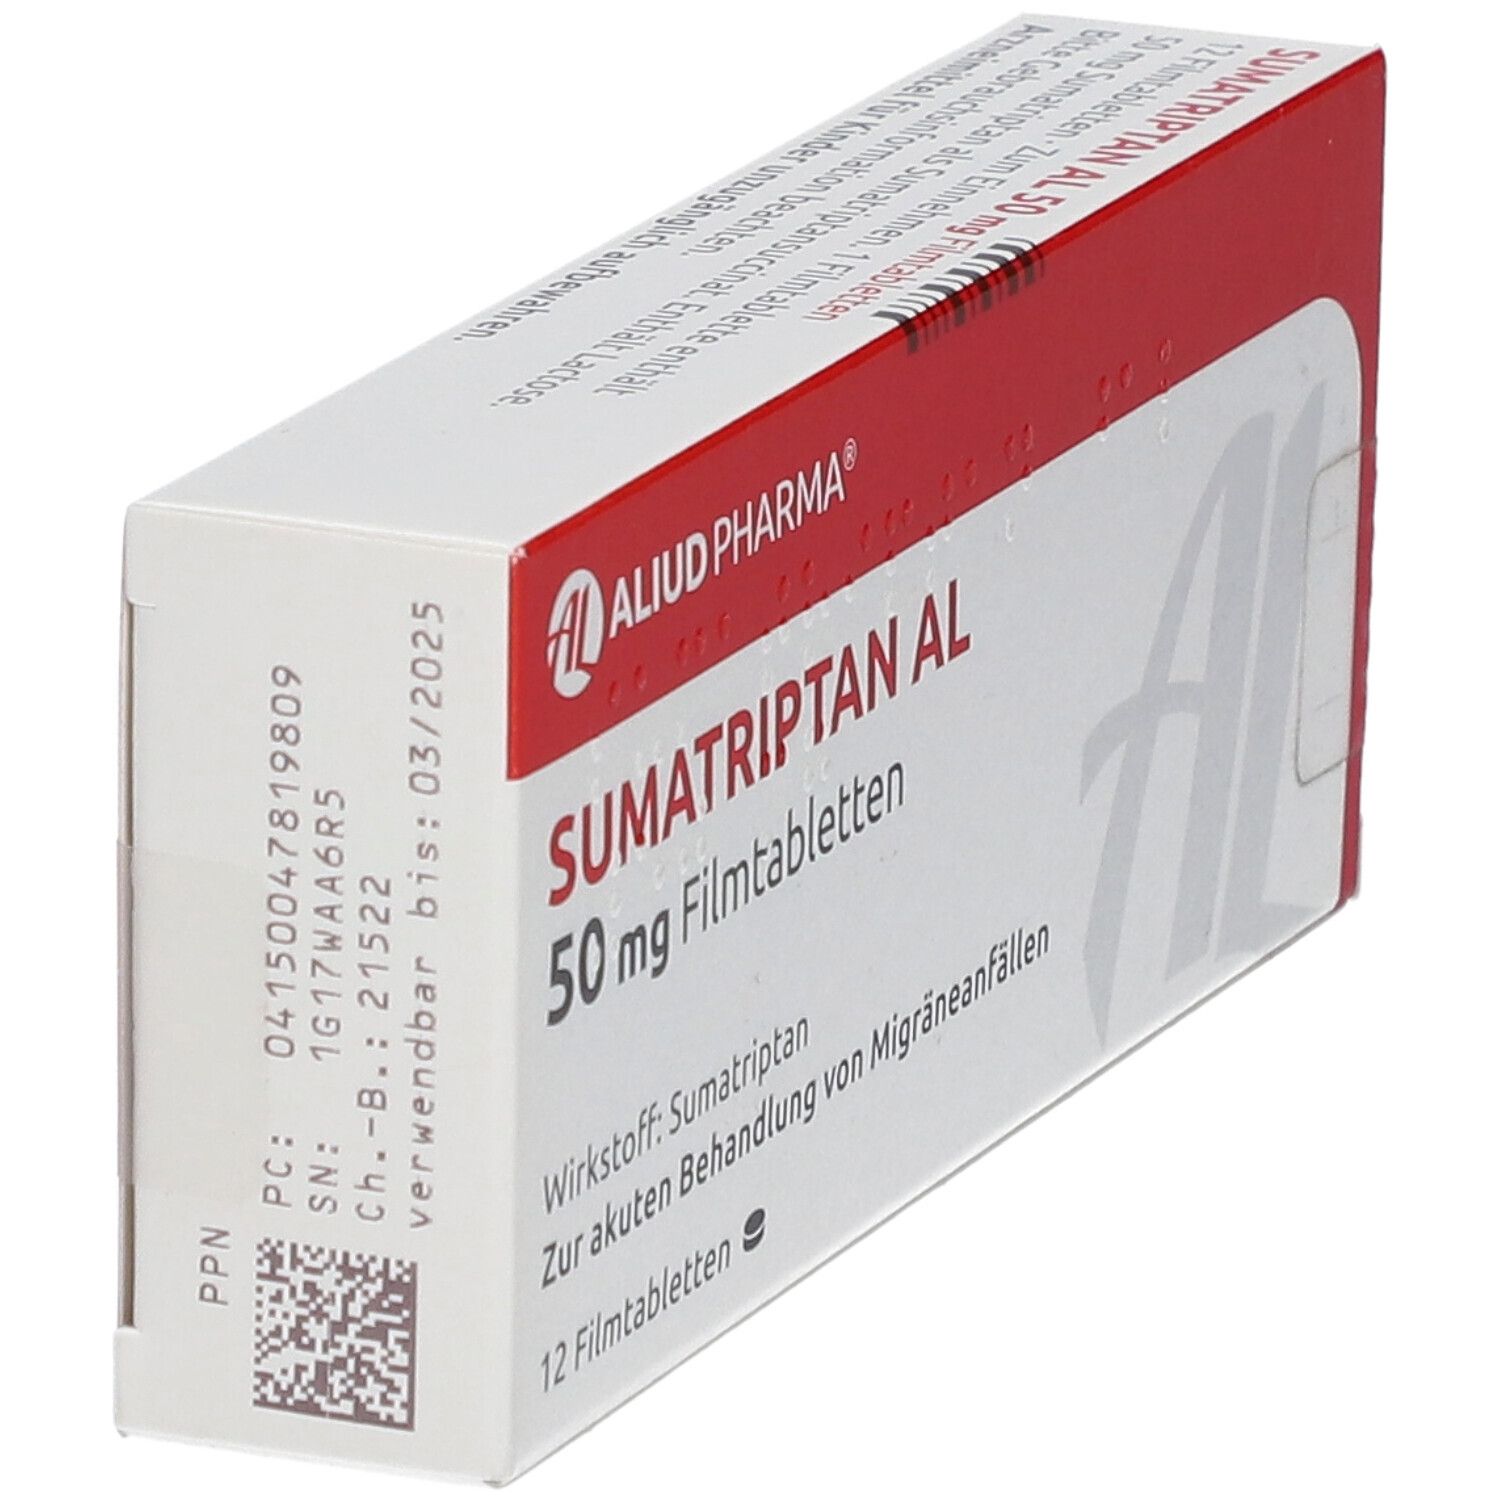 Sumatriptan AL 50 mg